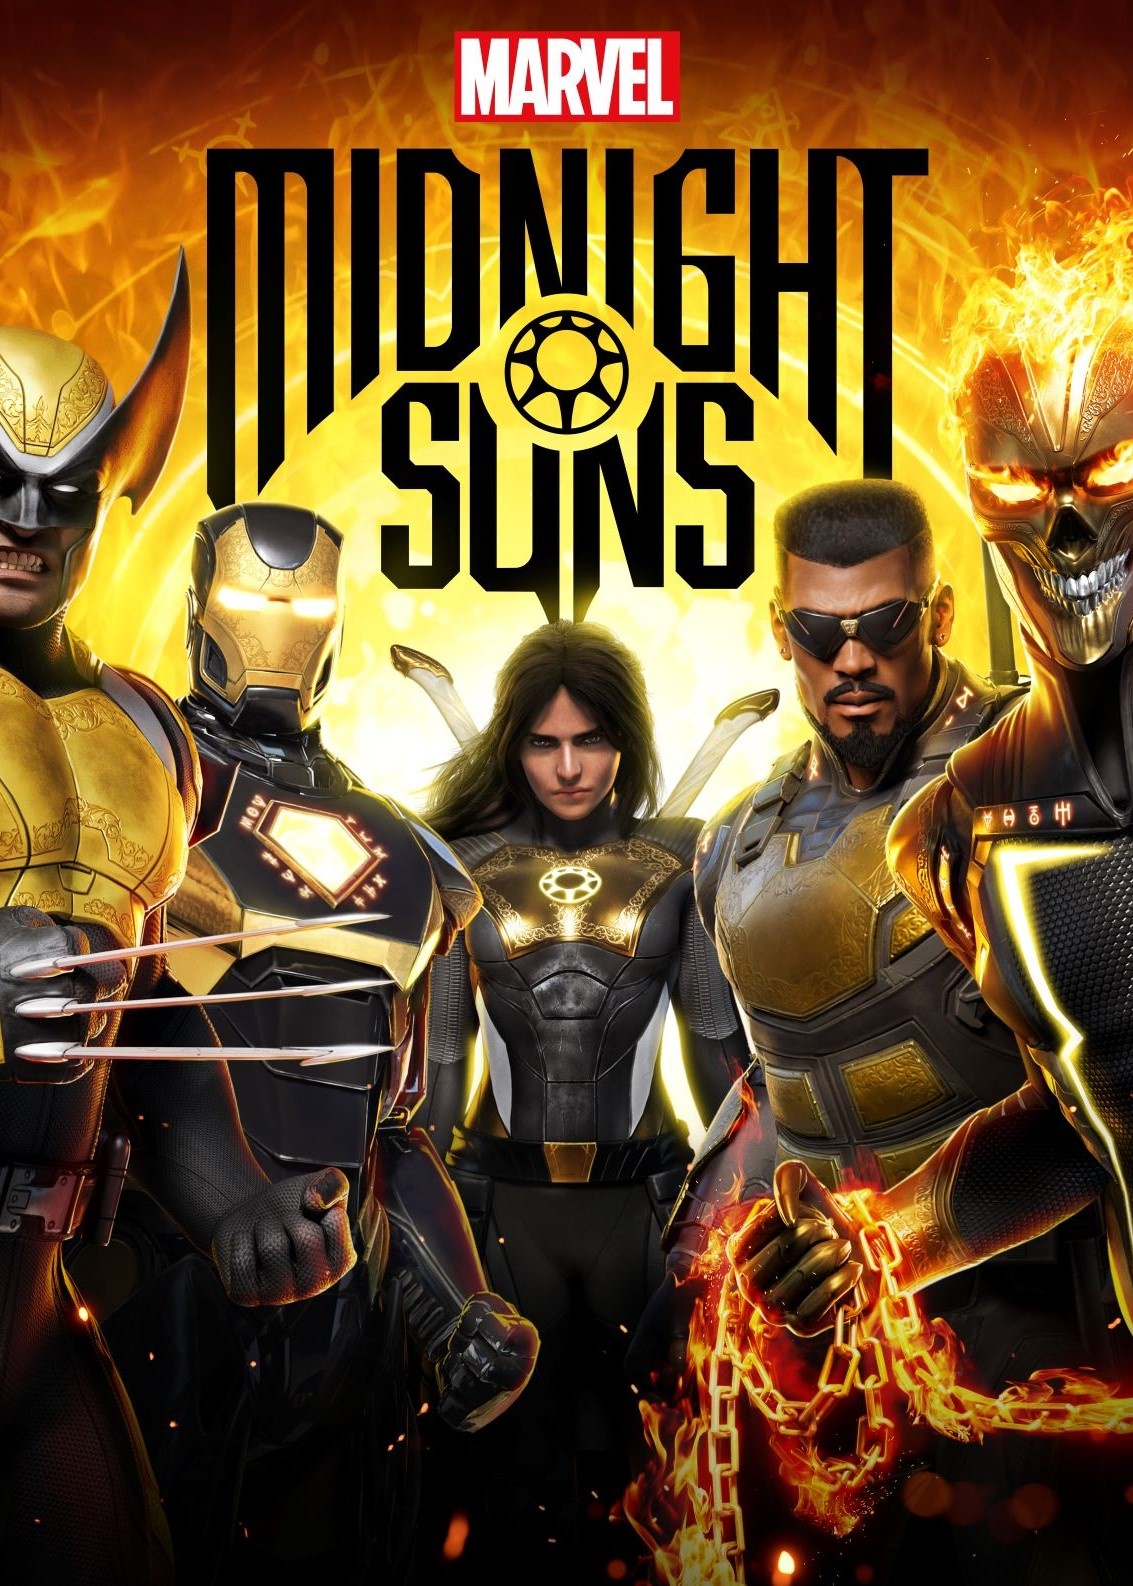 Marvel's Midnight Suns auf Metacritic: Endlich wieder ein gutes Marvel-Spiel